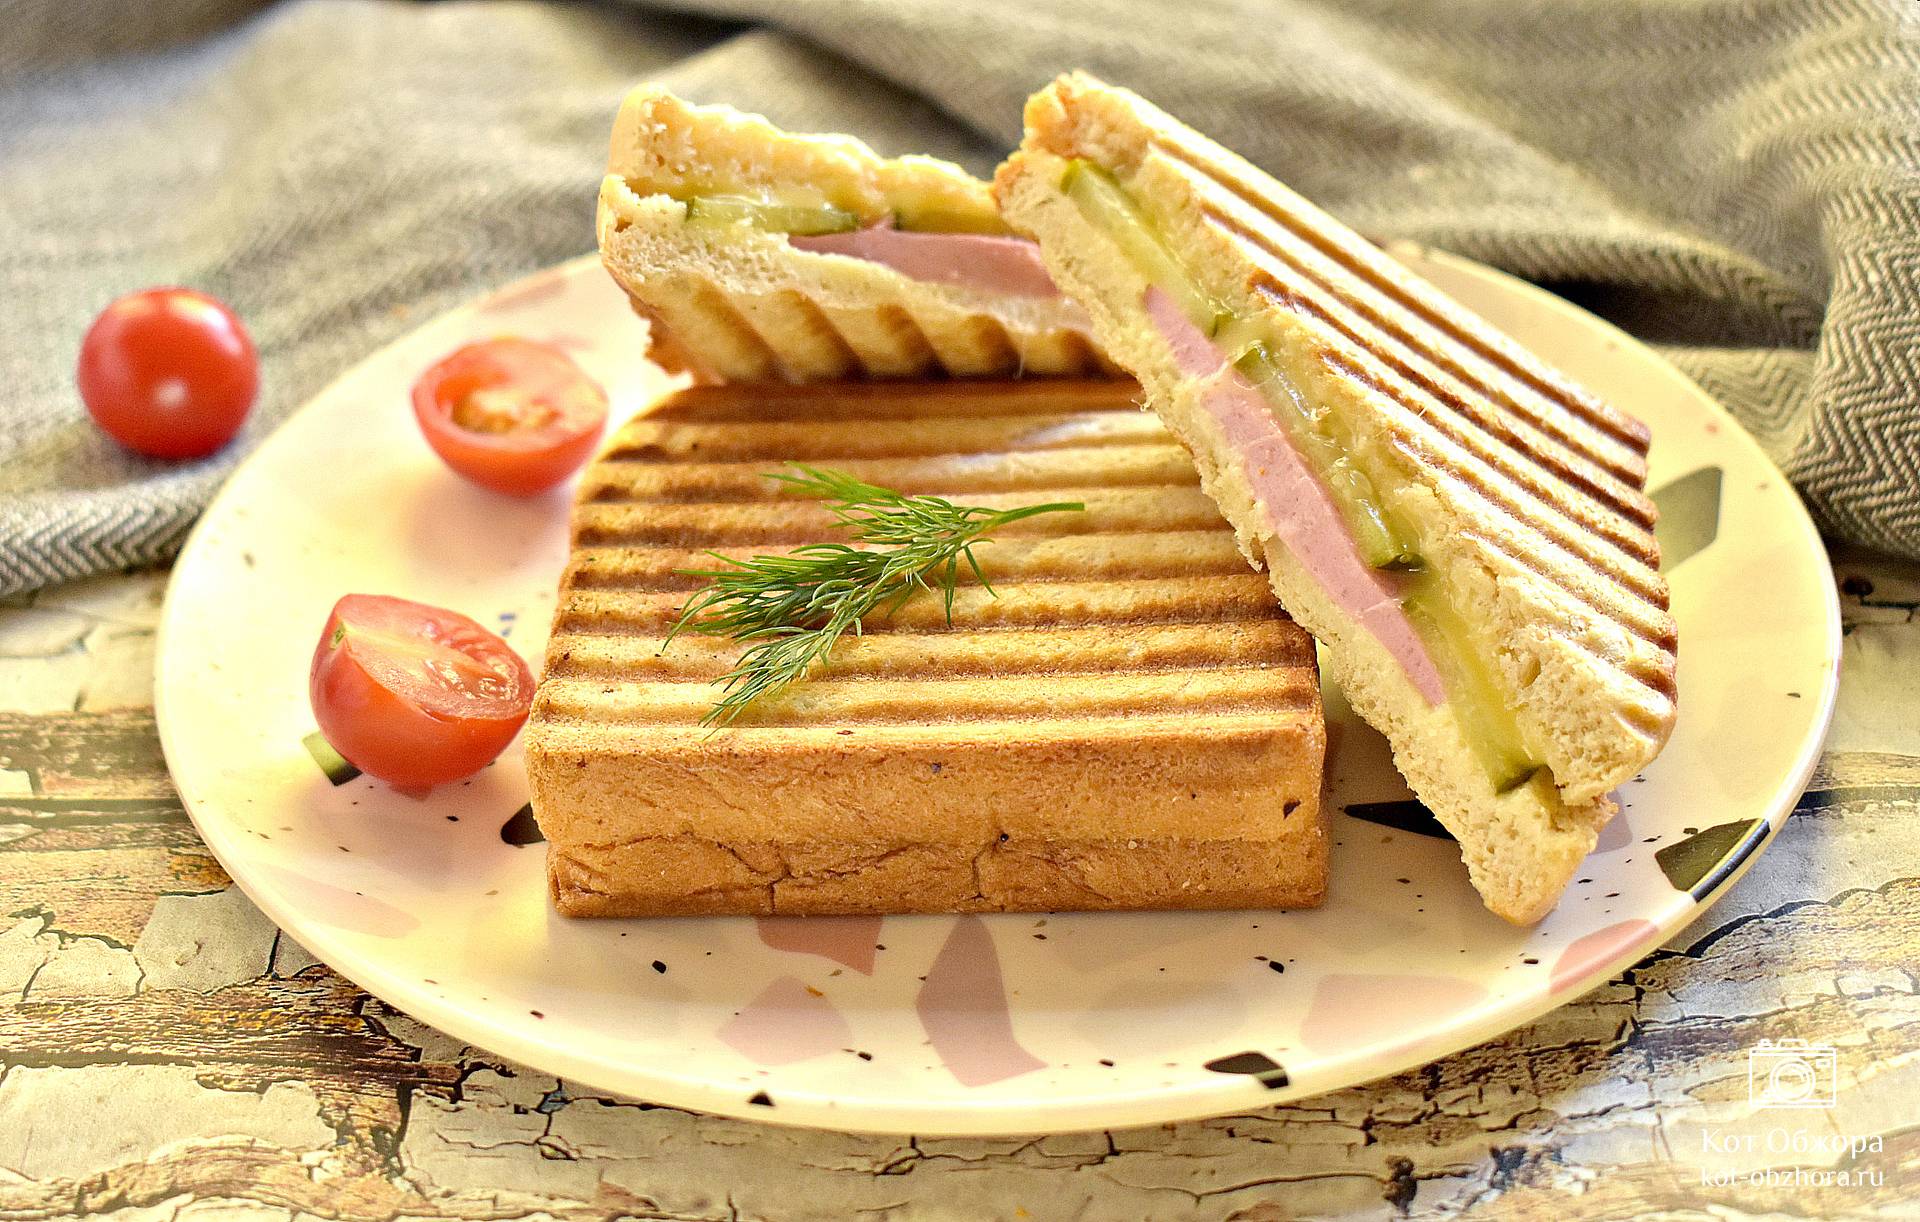 Сэндвич с салями и сливочным сыром - рецепт, как приготовить, пошаговая инструкция с фотографиями